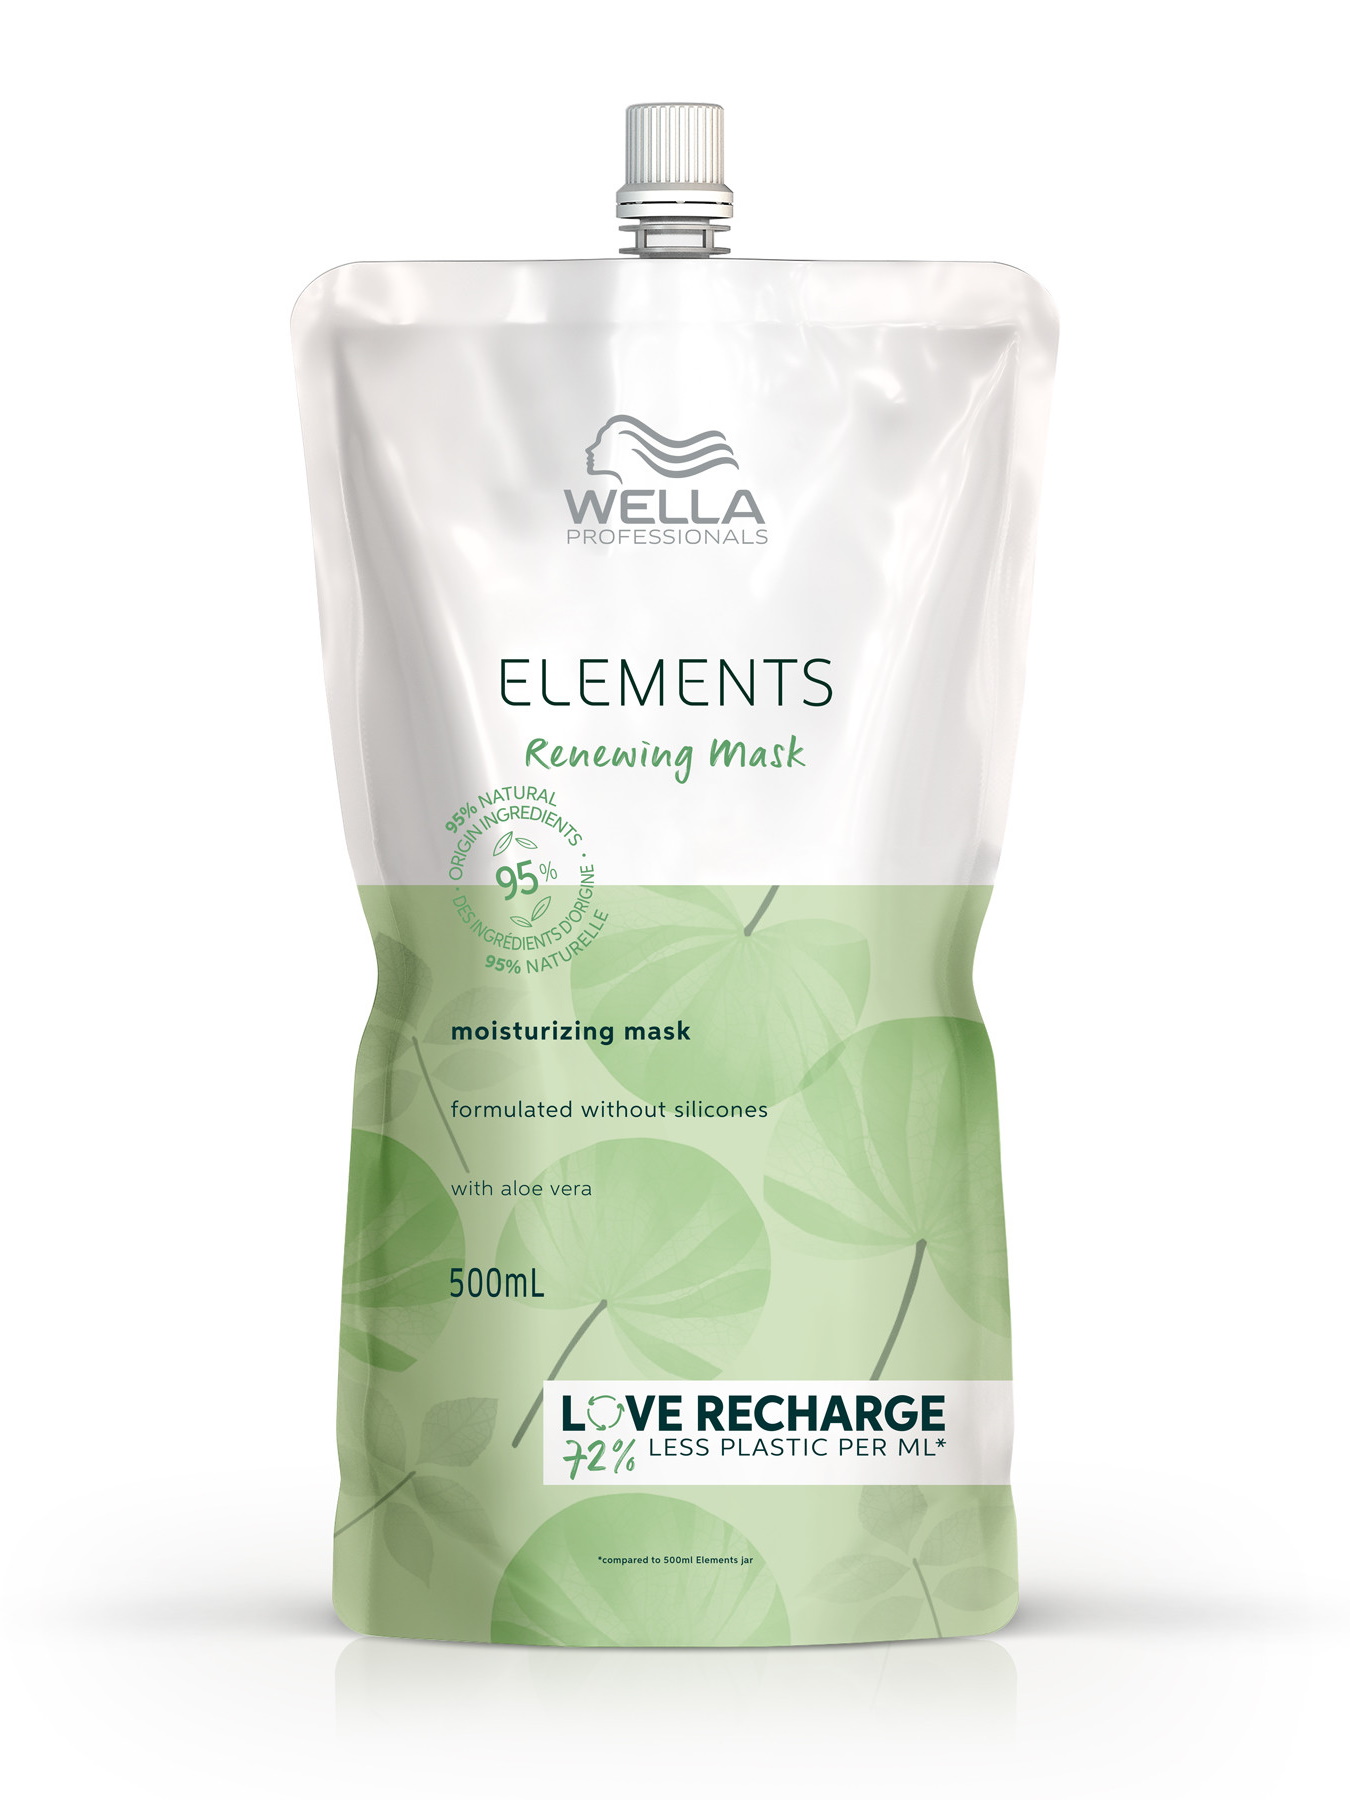 Маска ELEMENTS RENEWING для увлажнения волос Wella Professionals обновляющая 500 мл